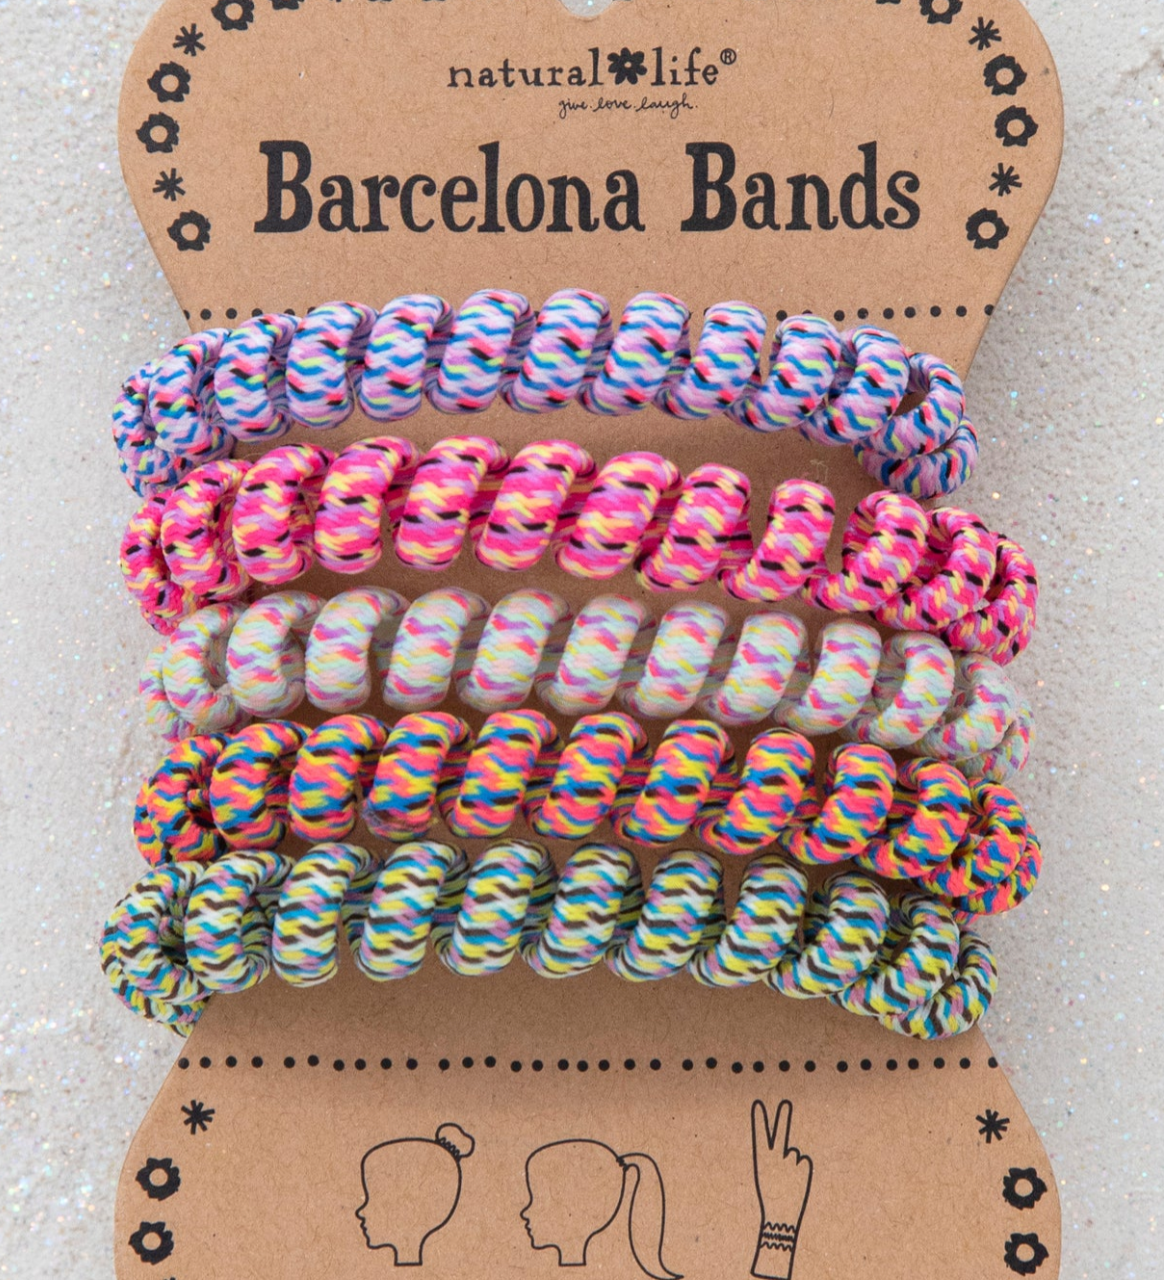 Barcelona Bands